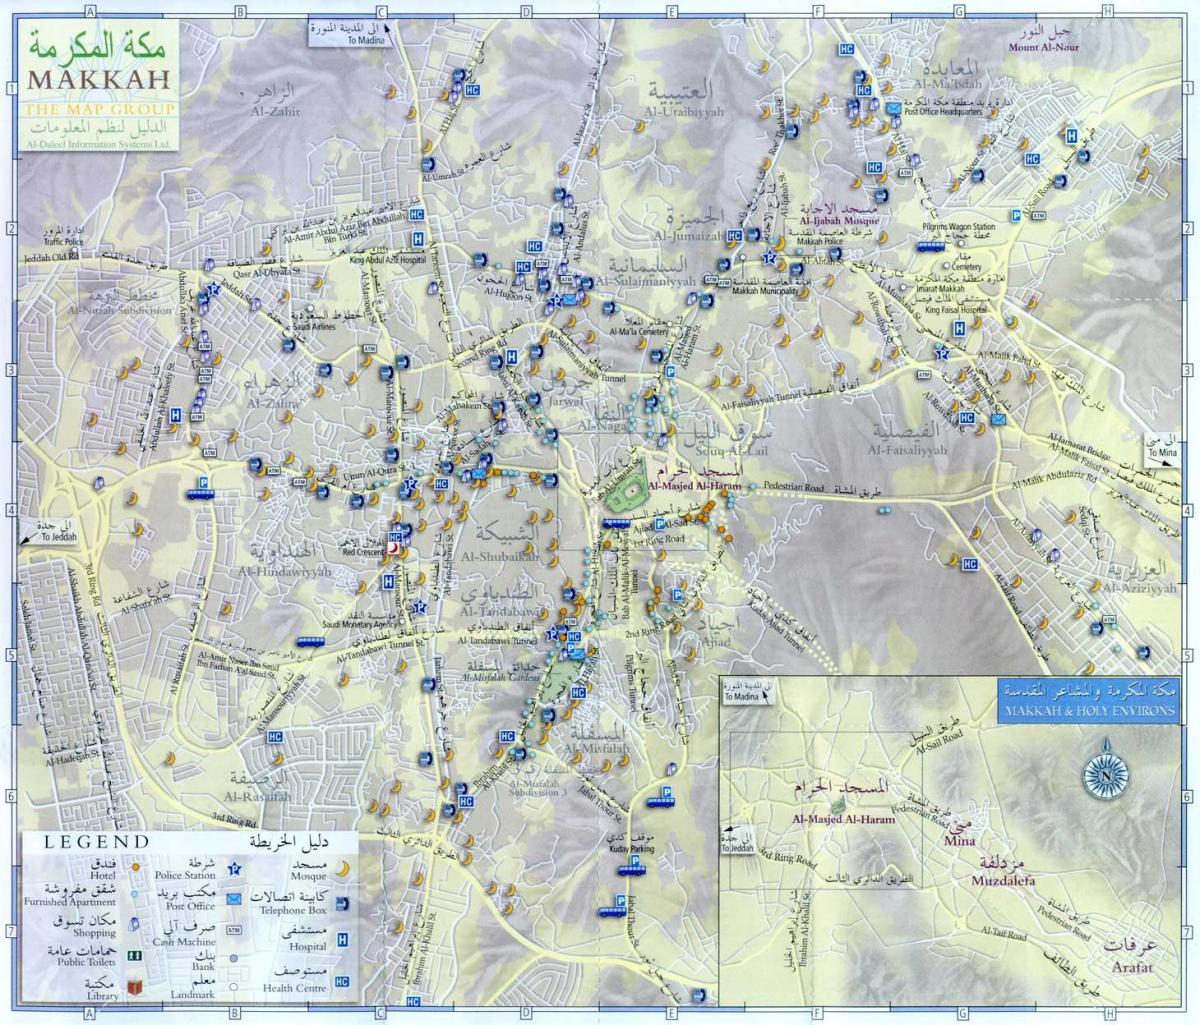  kaart van Makkah ziyarat plekke